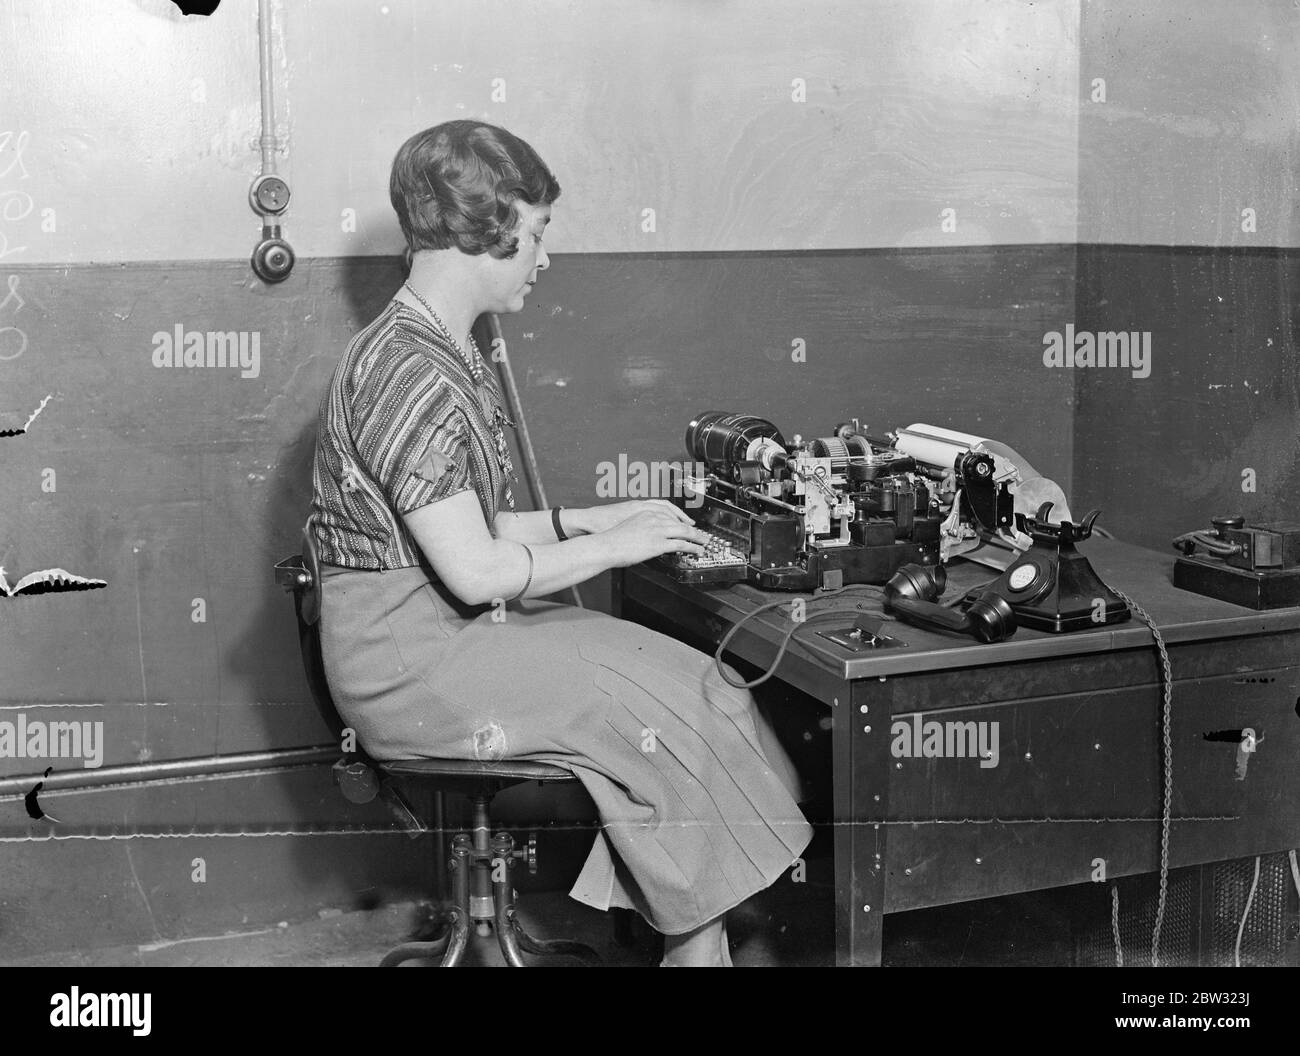 Système de téléimprimante inauguré au bureau central de poste . Le système de communication téléimprimeur qui fonctionne en conjonction avec le téléphone et permet à l'abonné de transmettre un message sur les lignes téléphoniques à l'aide d'un téléimprimeur dans le secret parfait a été inauguré à Londres . Envoi d'un message sur le téléimprimeur au Bureau général de poste , Londres . 15 août 1932 Banque D'Images